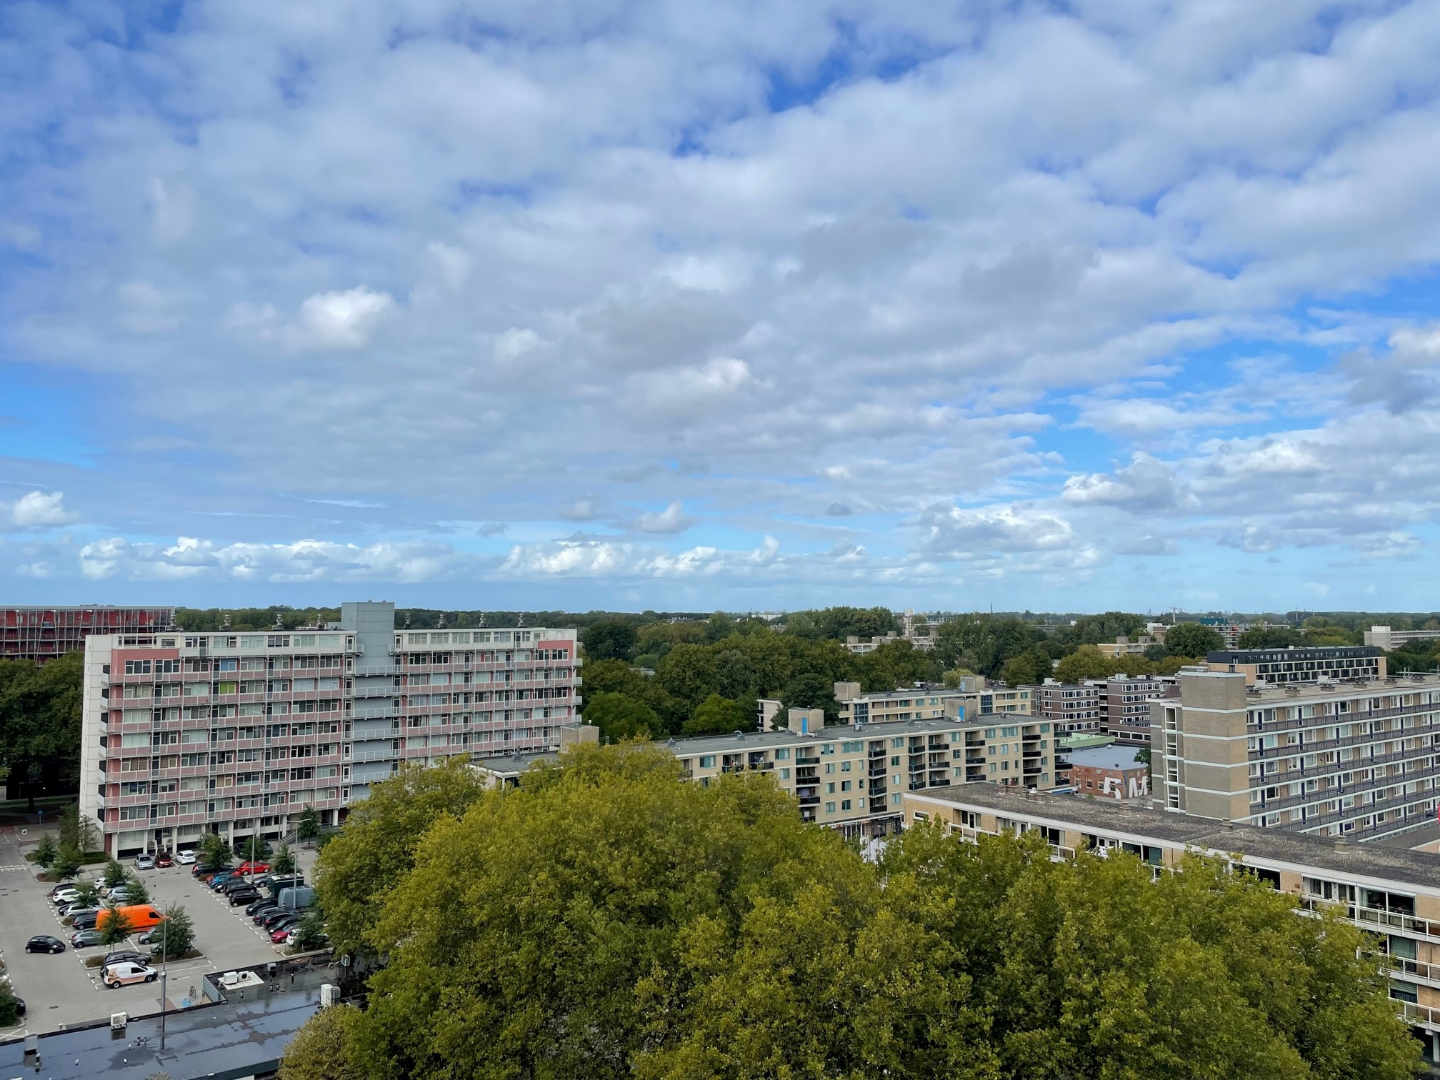 Genieten van de skyline van Rotterdam vanaf uw balkon? Met dit 3 (voorheen 2) - kamer appartement op de 10 de etage in het  55+ appartementencomplex “De Prinsenwiek” zit dat helemaal goed! 